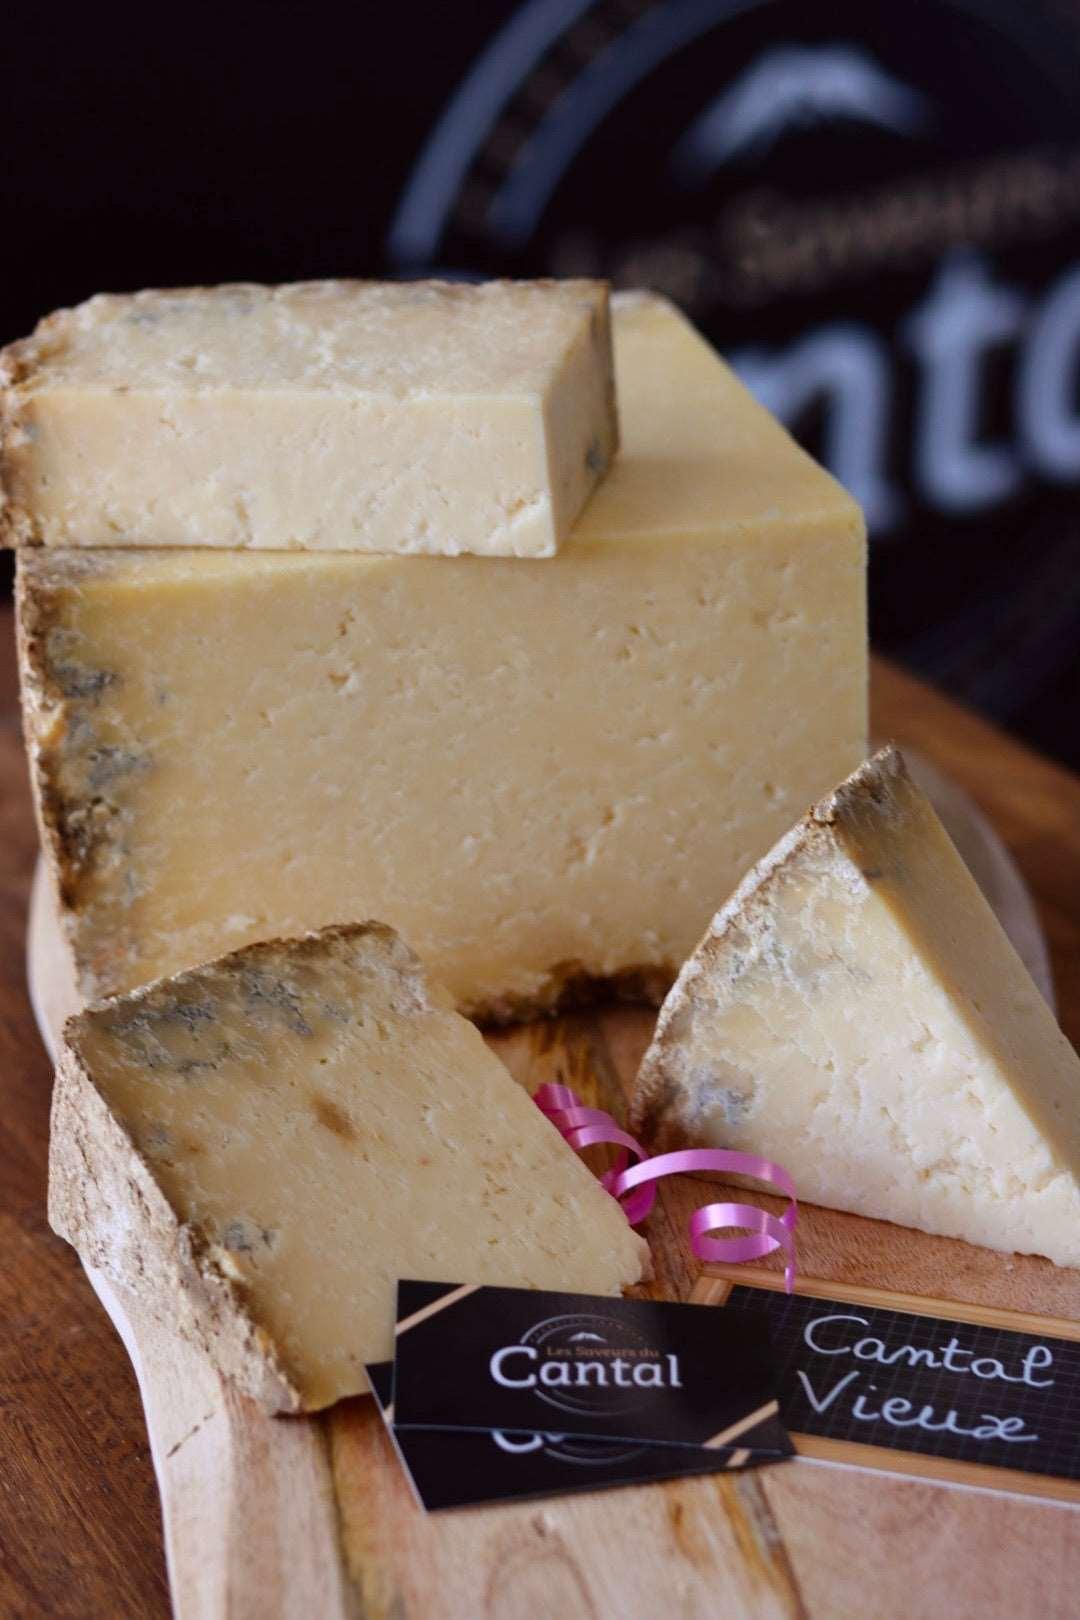 
                  
                    Le Cantal Vieux est un fromage de caractère au goût puissant et affirmé, qui a été affiné pendant au moins 8 mois. Sa croûte naturelle et sa pâte ferme et friable offrent une expérience gustative unique, avec des notes de noisette et de caramel. Ce fromage est idéal pour les amateurs de fromages forts et savoureux.
                  
                